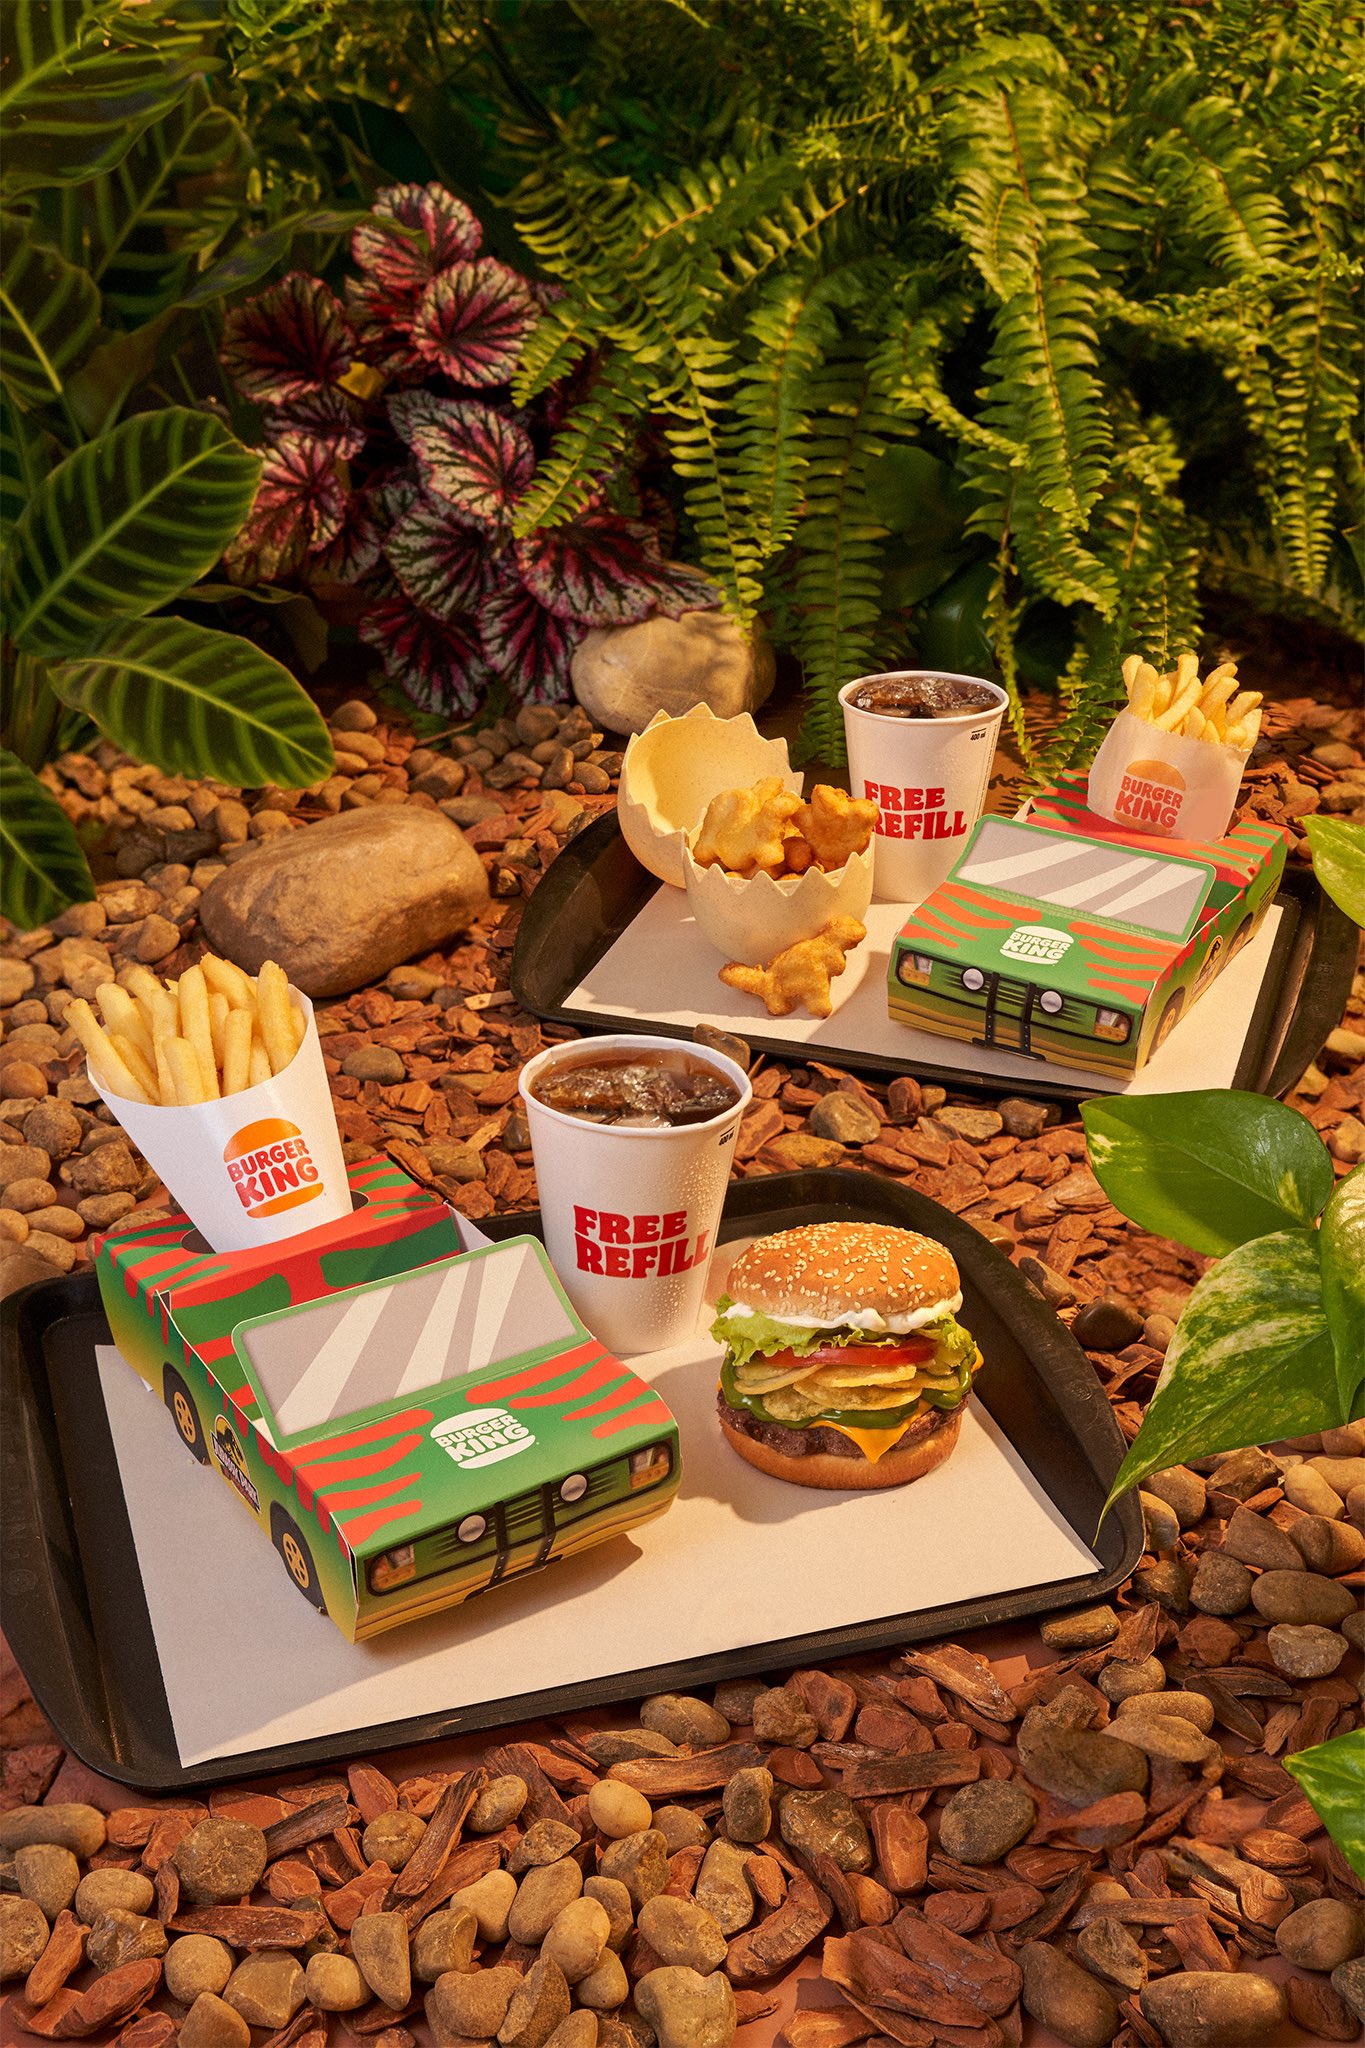 É claro que no Combo BK Jurassic Park não poderia faltar um Burger